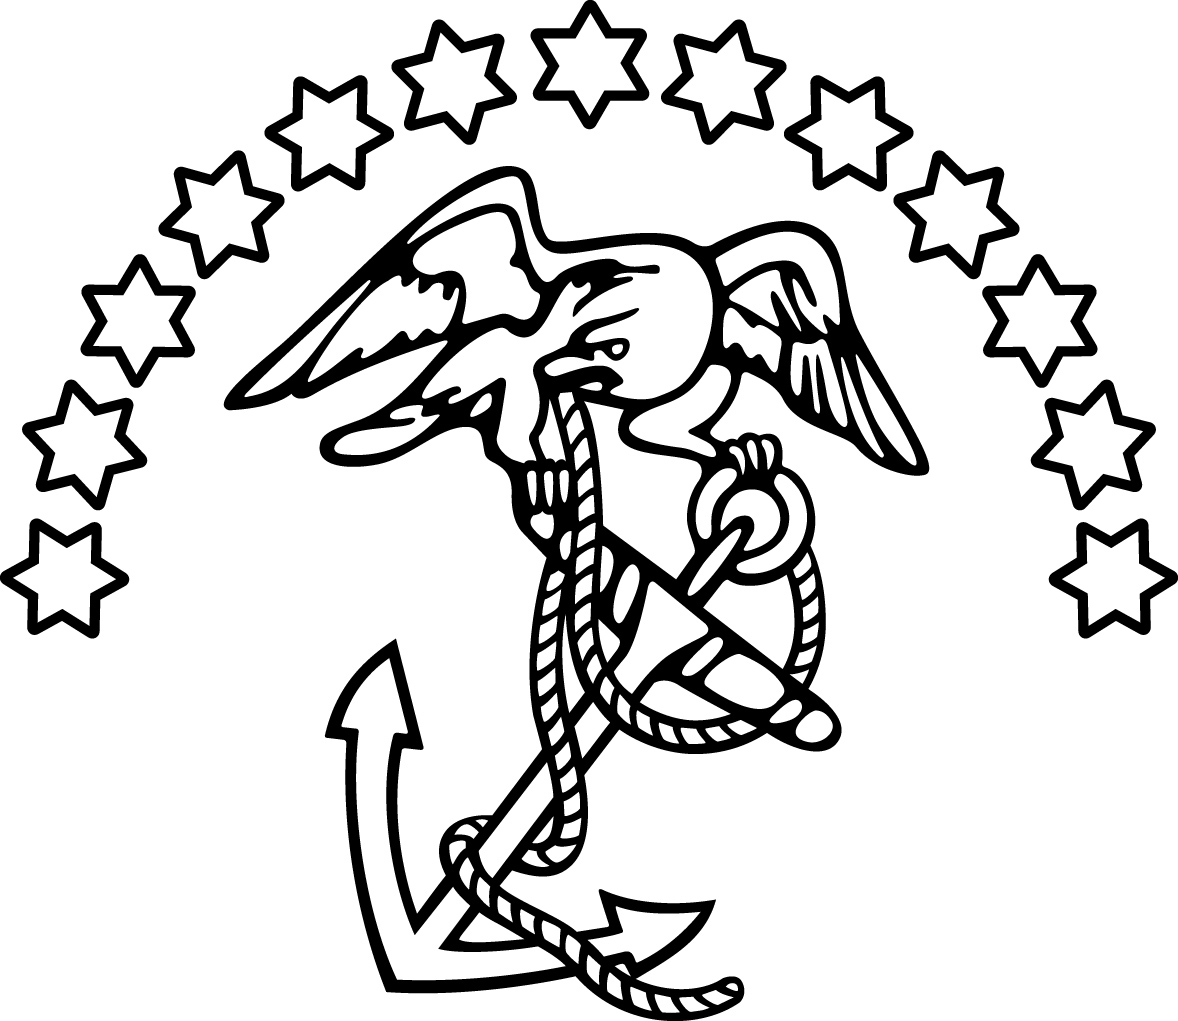 Marine Corps Heritage Foundation Logo